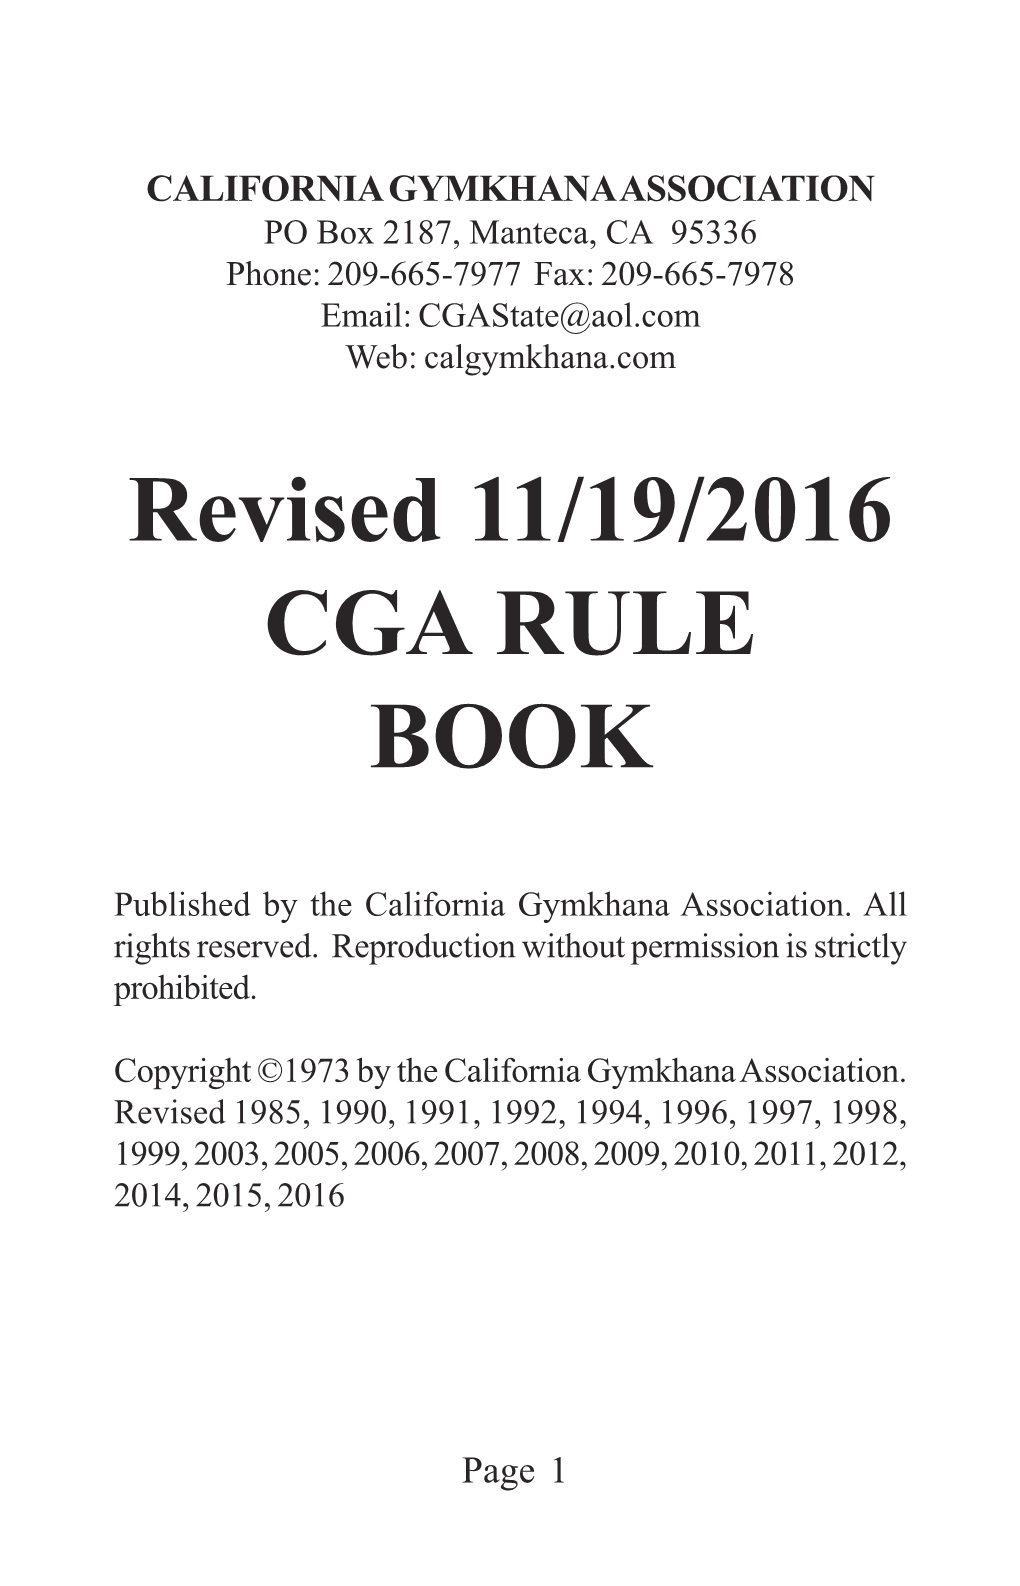 Revised 11/19/2016 CGA RULE BOOK